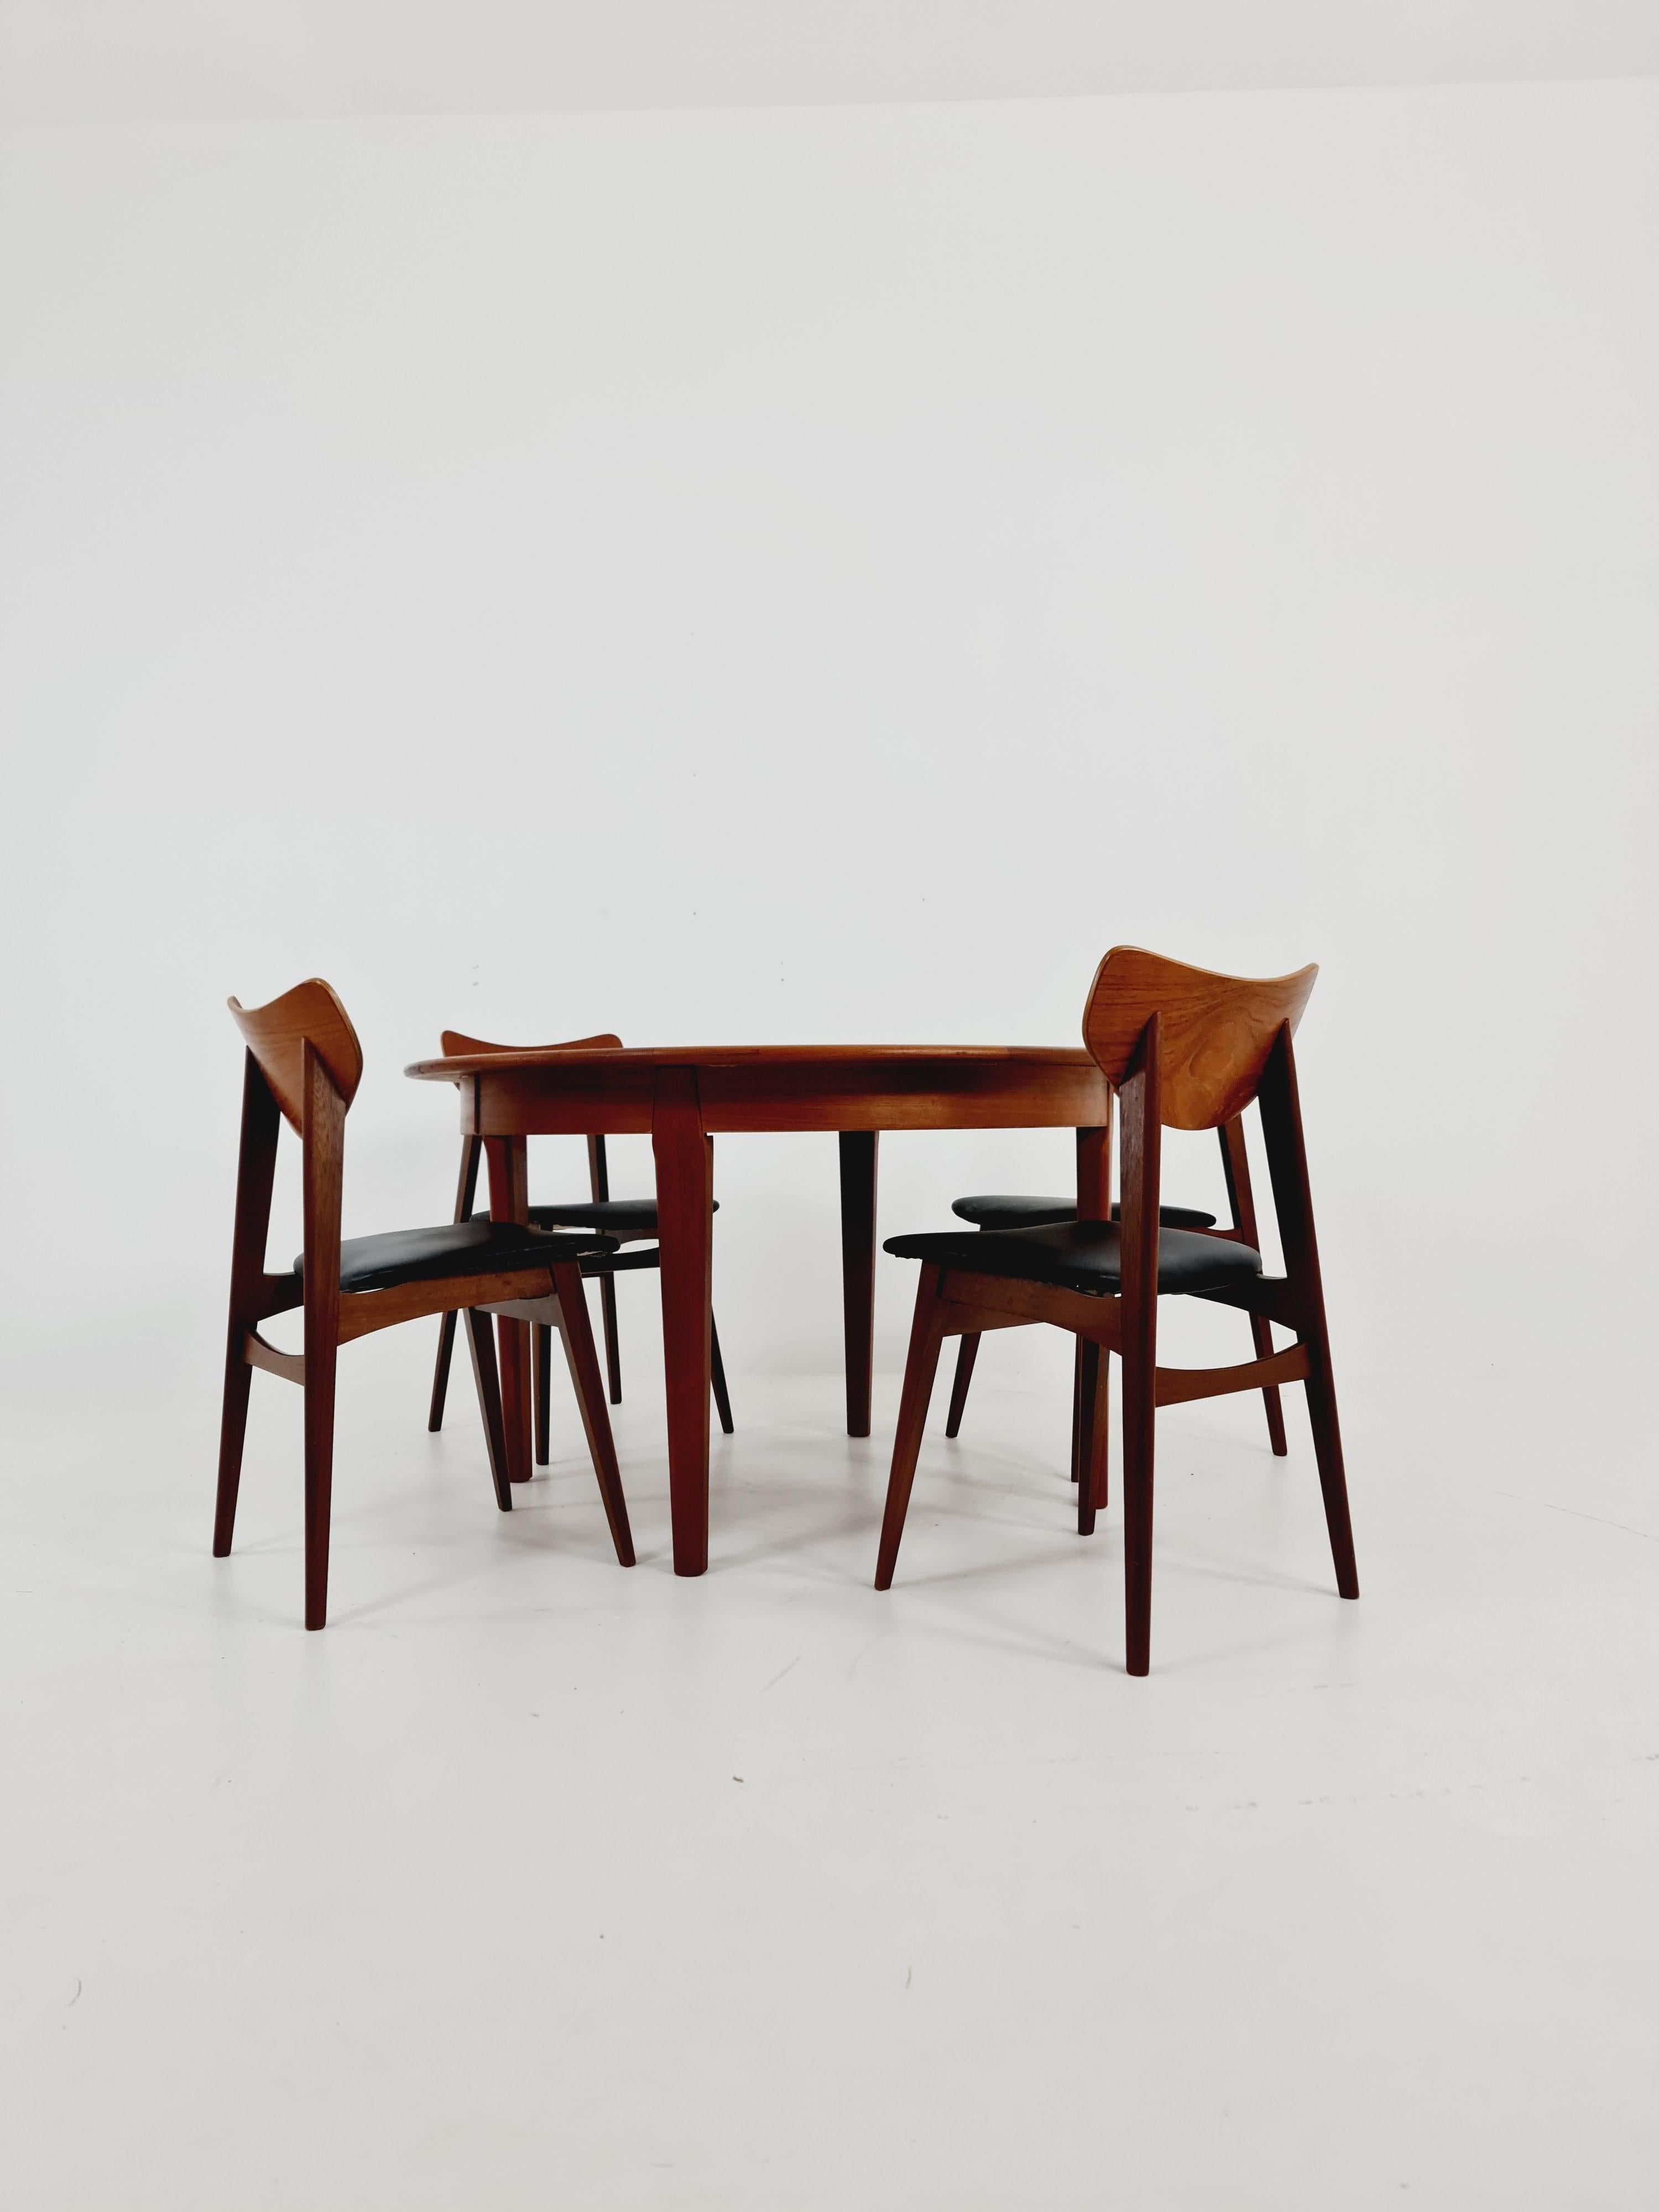 Table de salle à manger extensible Falster en teck, moderne danoise, années 1960

La table est en très bon état. 

Fabriqué au Danemark 

Falster Møblerfabrik

La table peut être agrandie très facilement grâce aux deux plateaux intégrés et offre